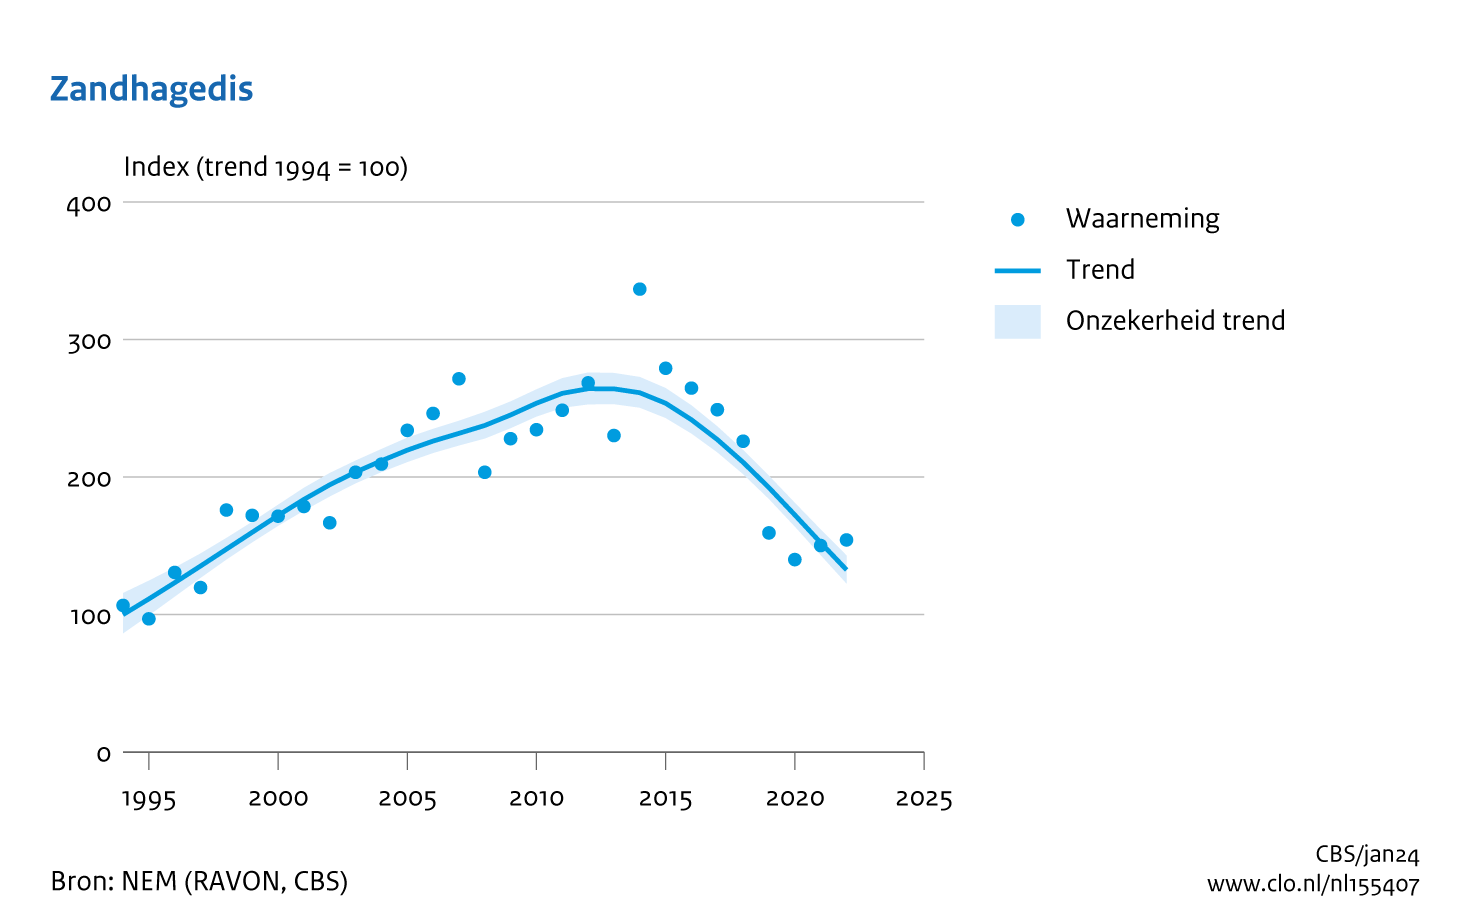 De grafiek Zandhagedis laat zien dat deze soort sinds 1994 (index = 100) eerst in aantal gestegen is tot 2012 (index = 264). Daarna neemt hij af tot indexwaarde 133 in 2022.